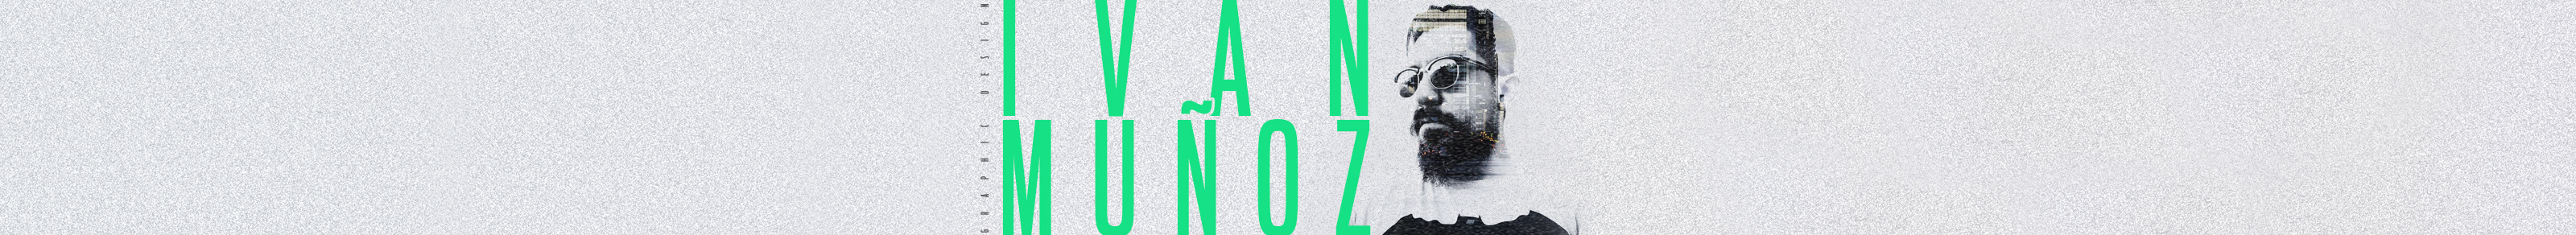 Iván Muñoz Soto's profile banner